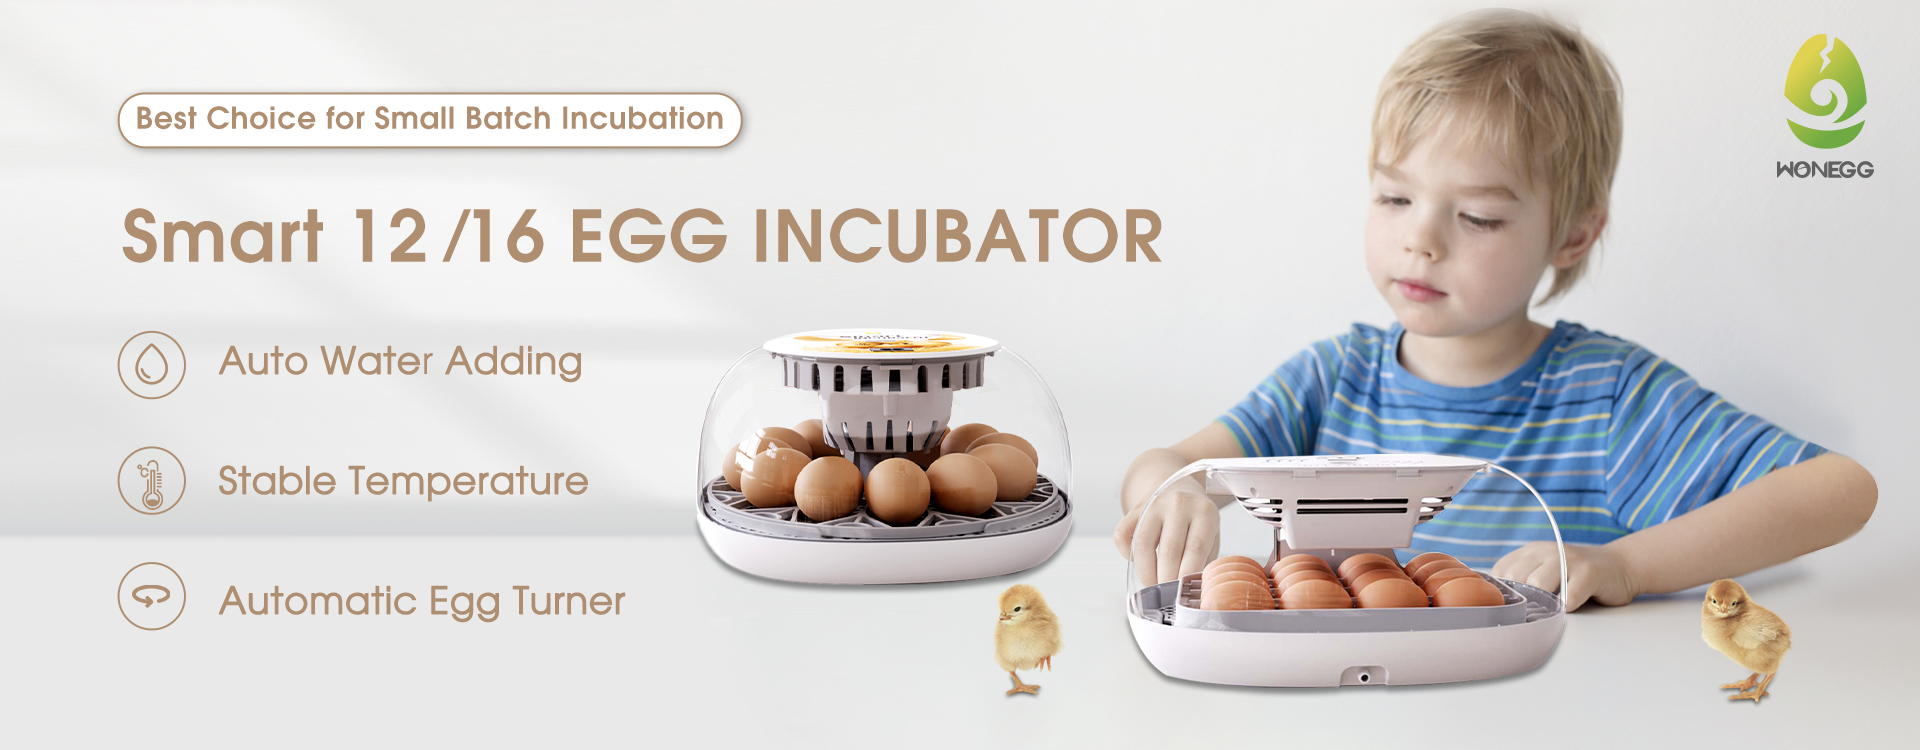 inteligente 12 16 huevos incubadora